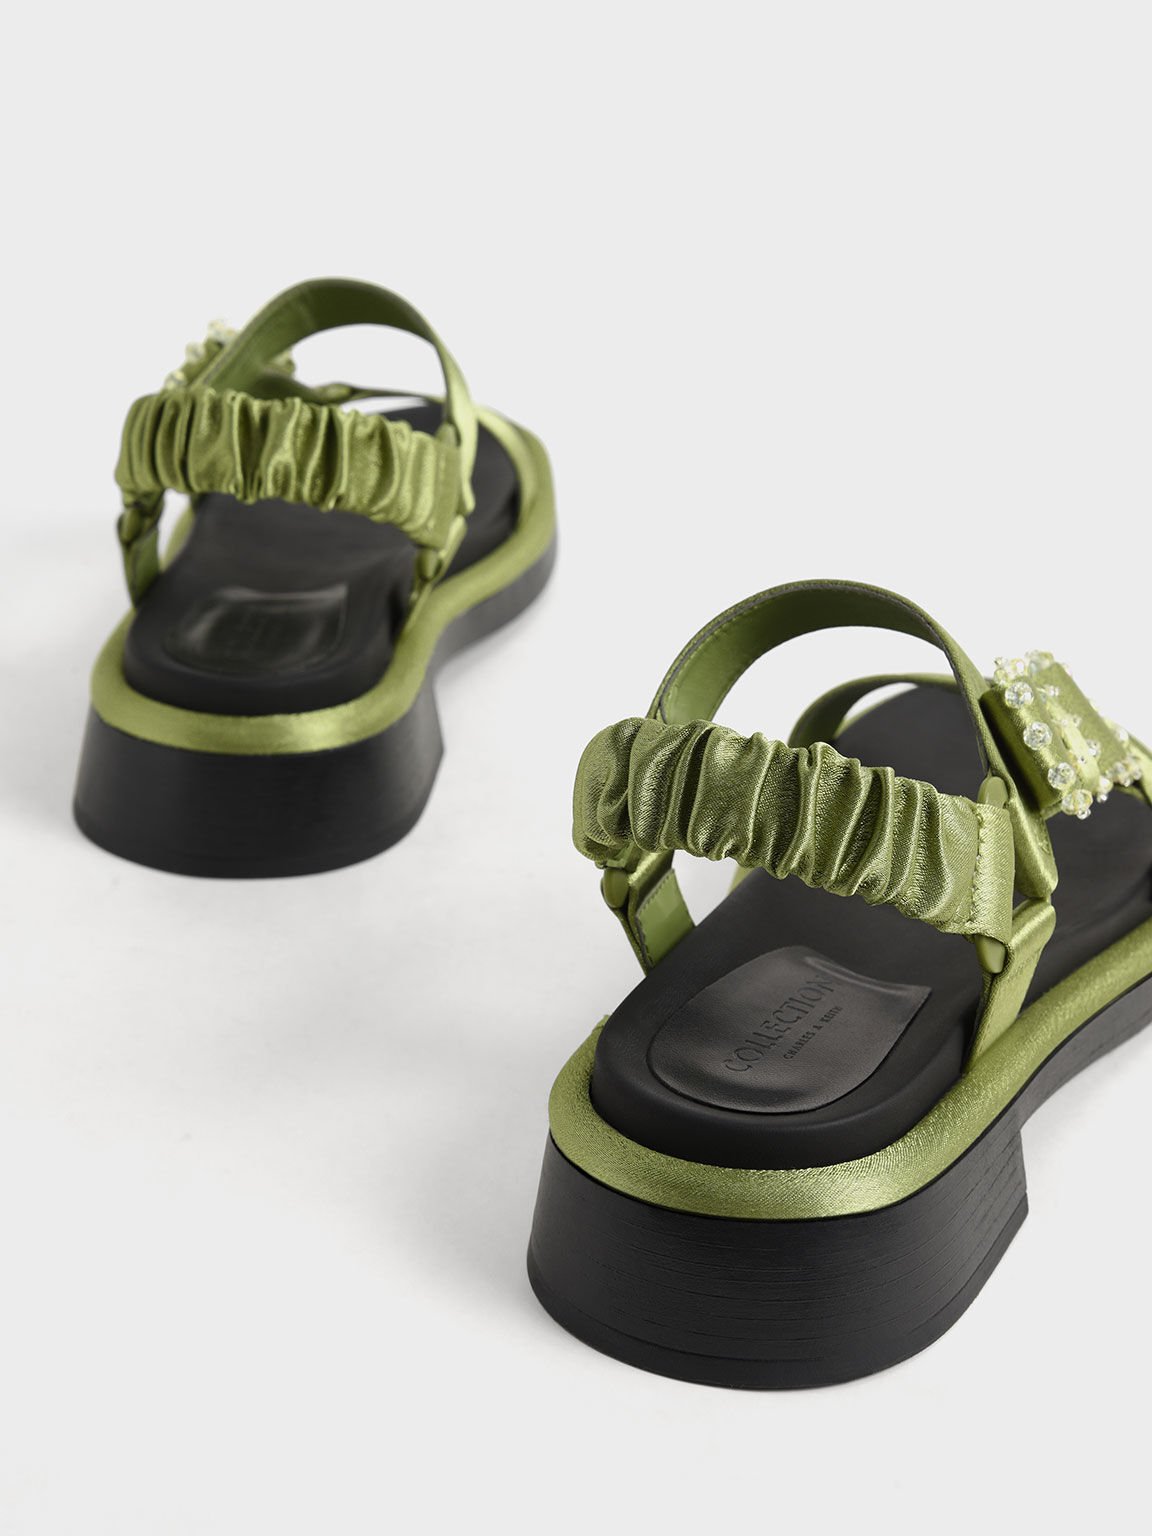 Miko Gem-Embellished Satin Sandals, Green, hi-res